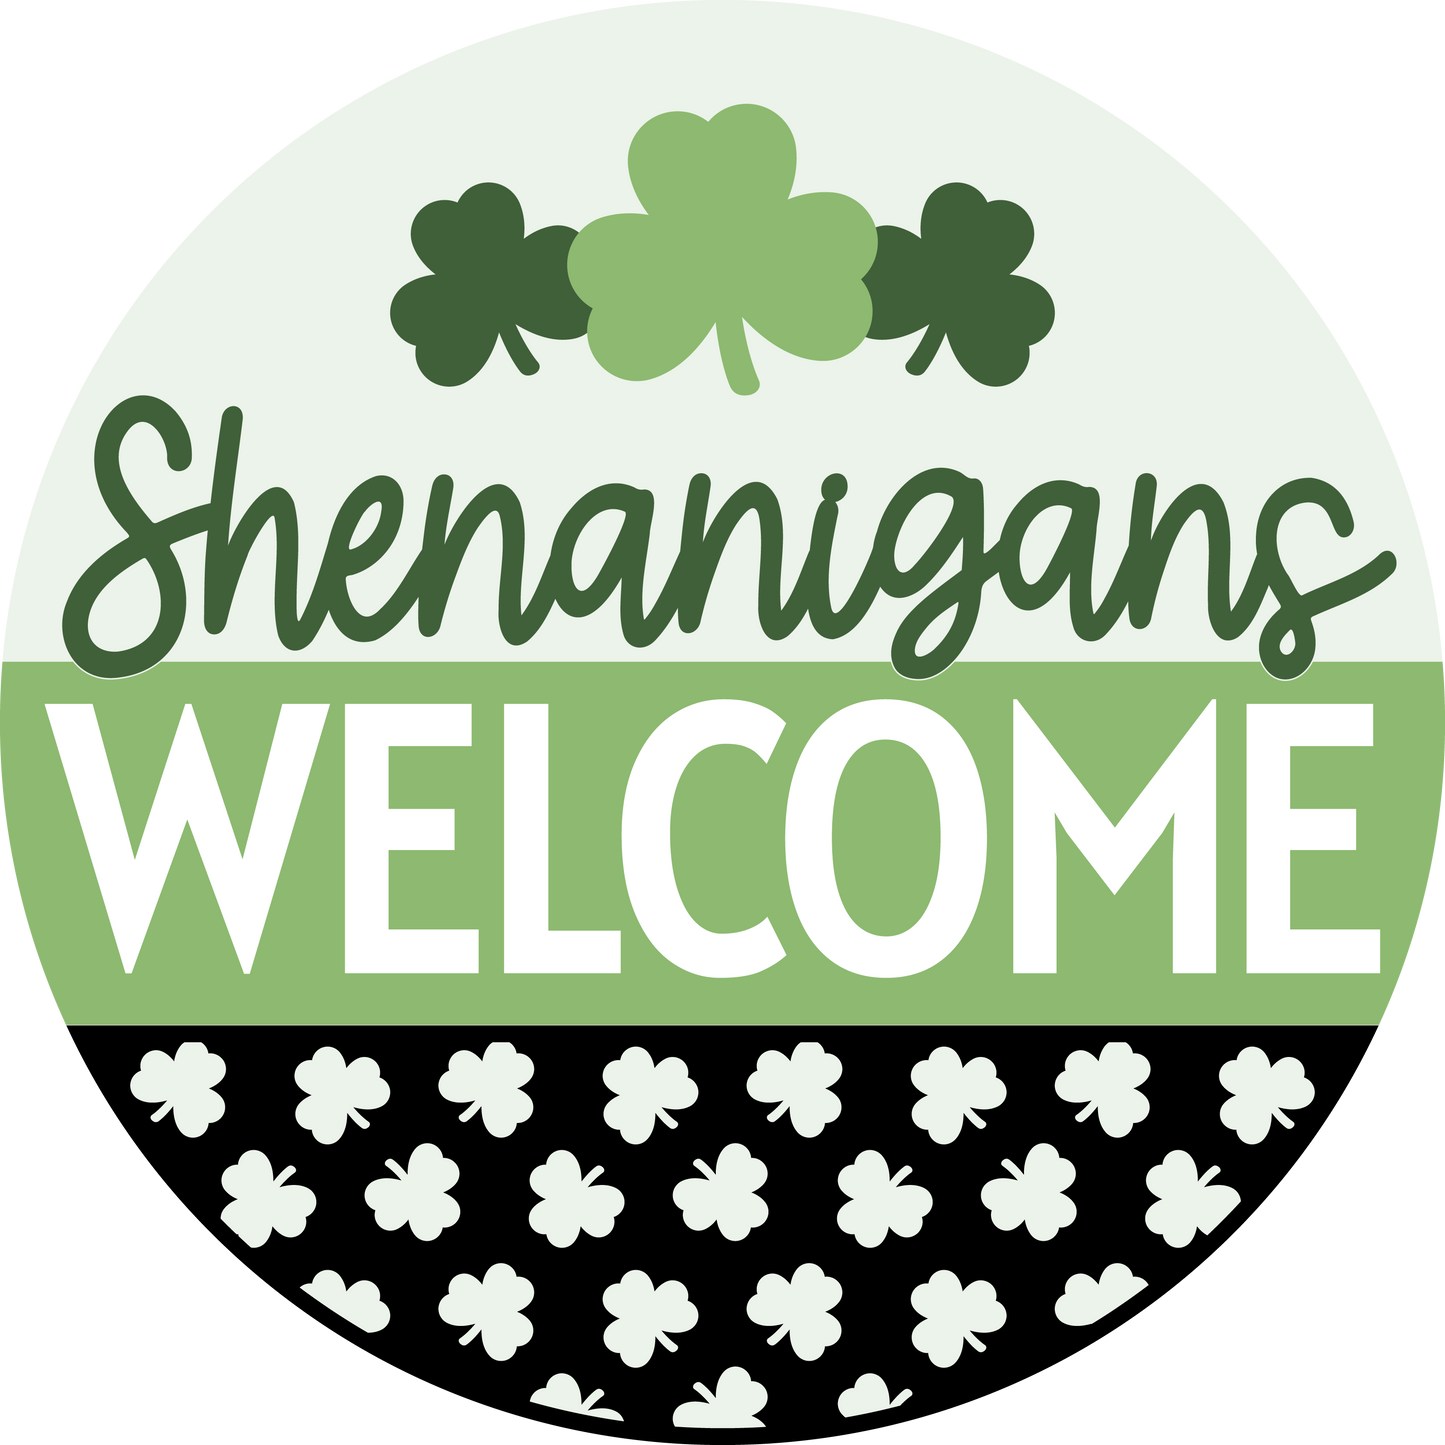 Shenanigans Welcome Door Hanger